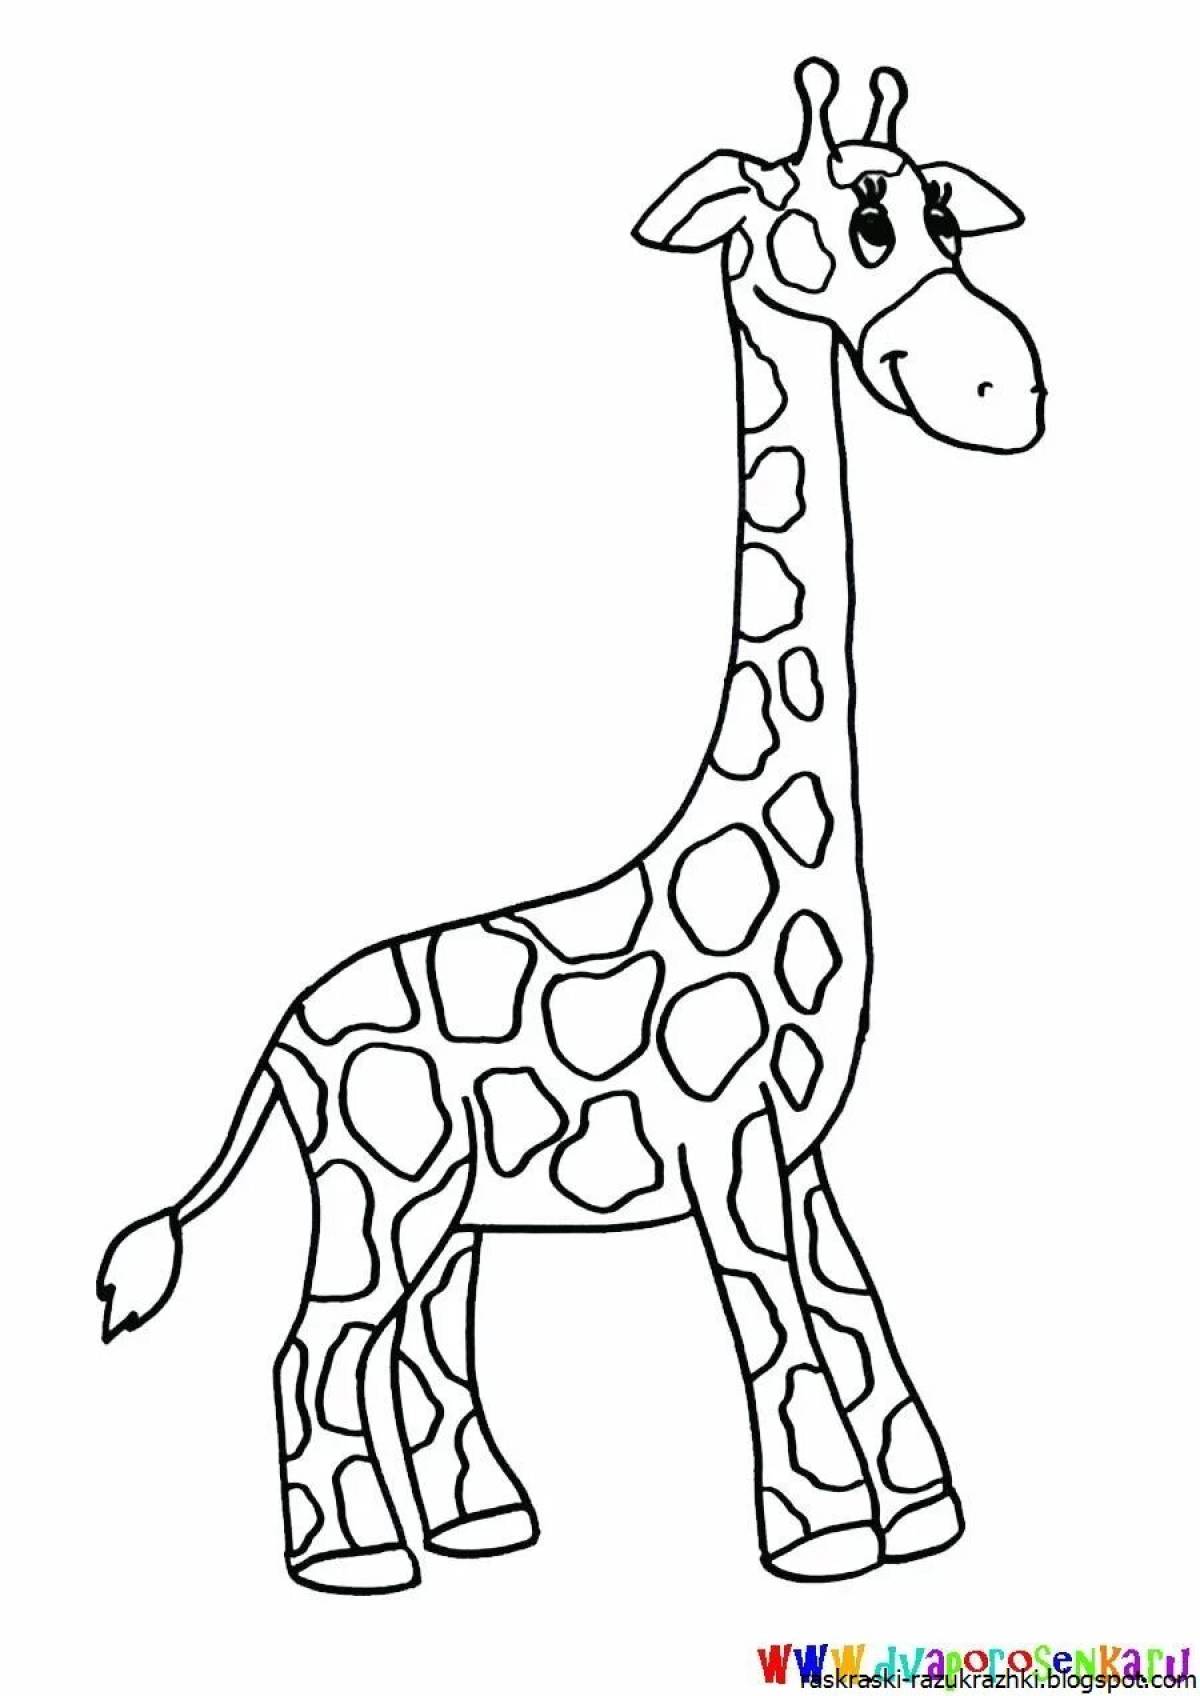 Живая раскраска жираф для детей 6-7 лет